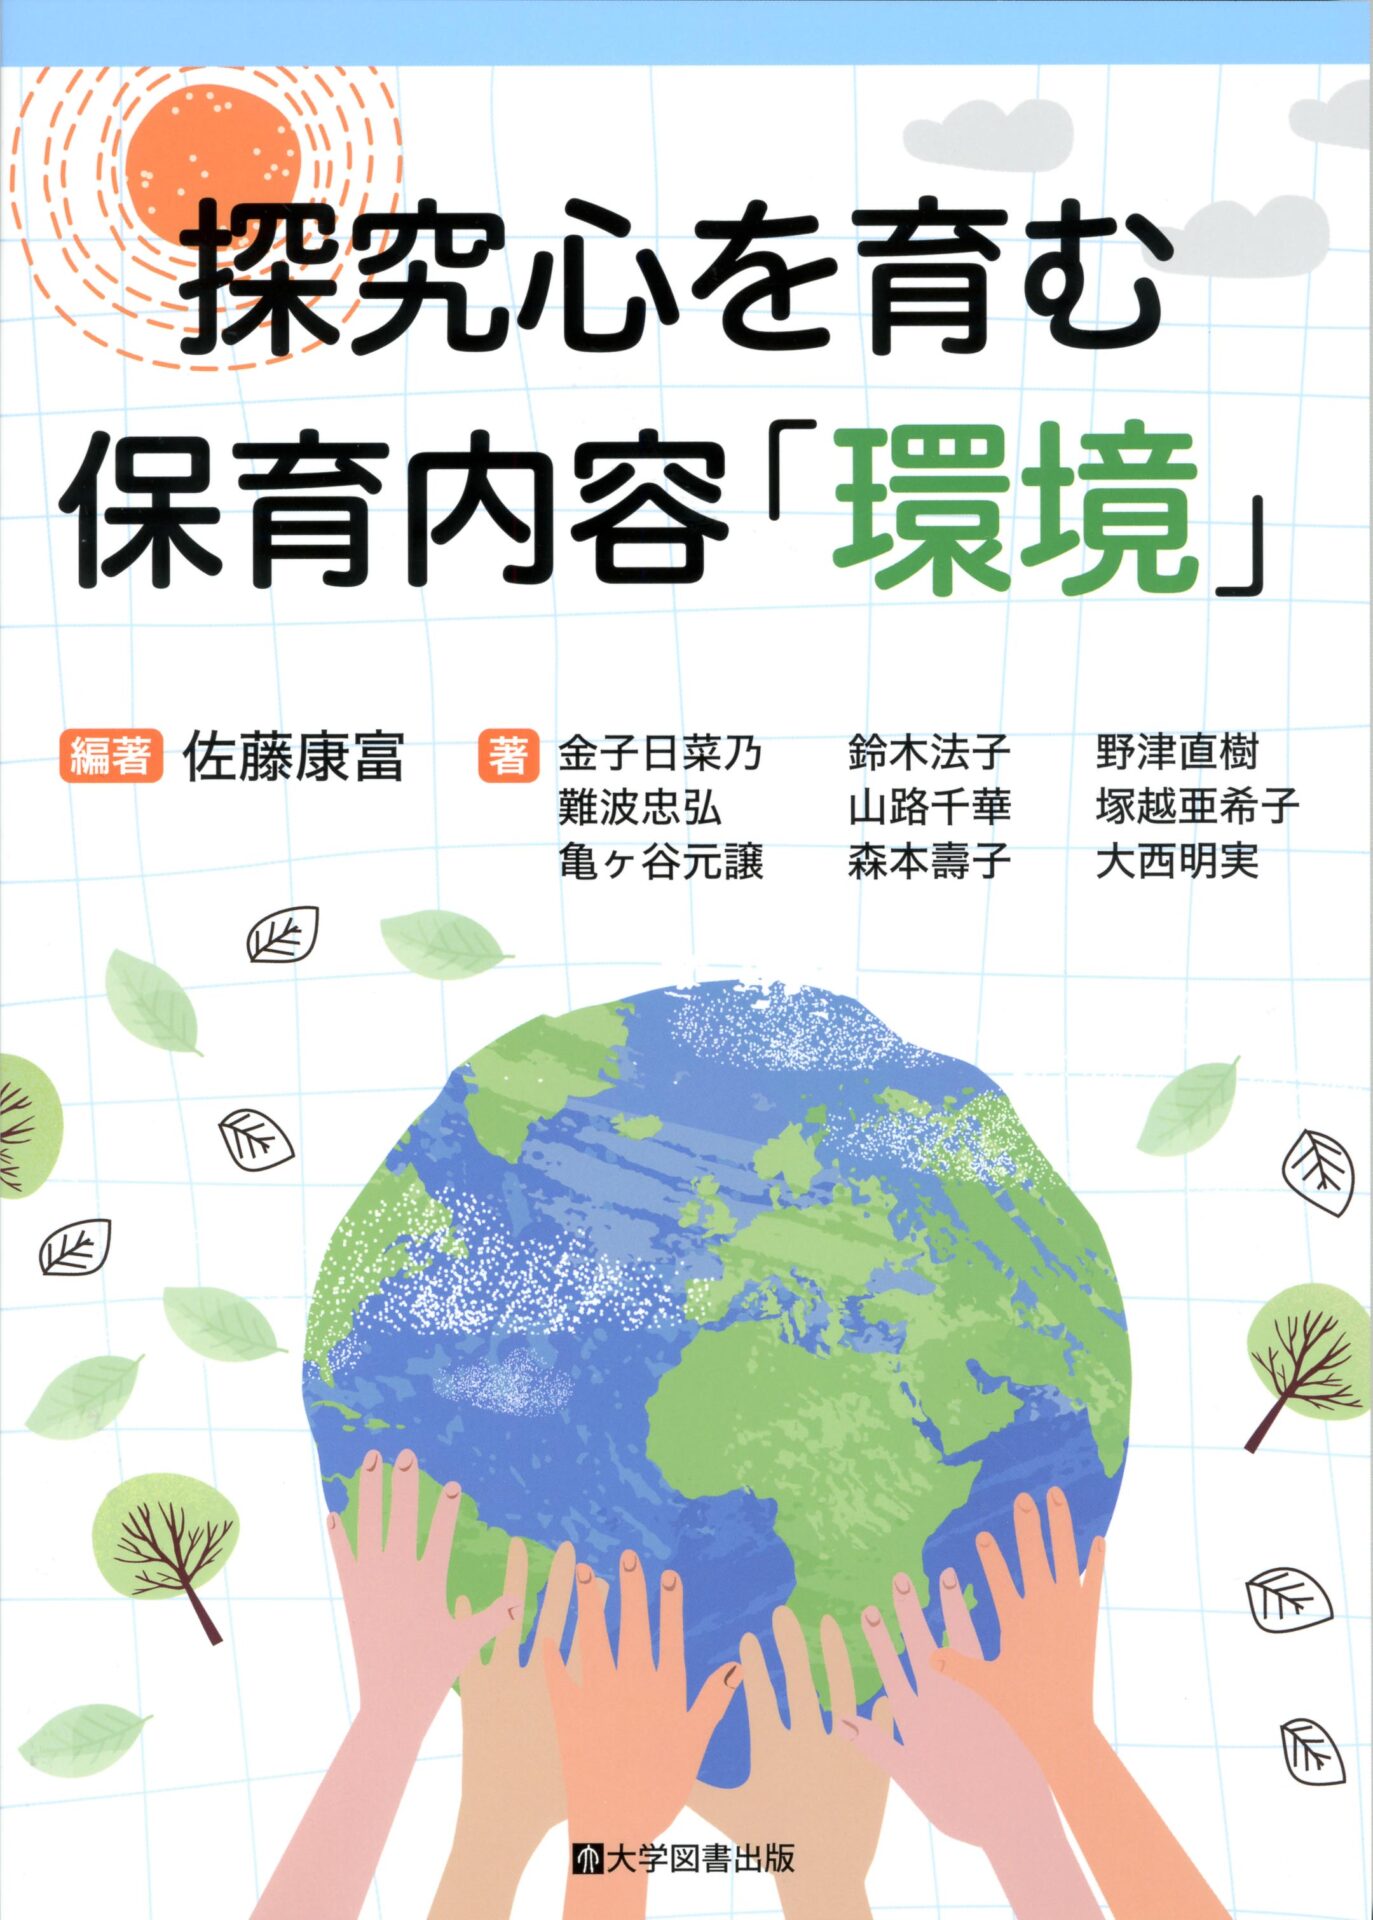 探究心を育む保育内容「環境」 | 教育関係図書の株式会社大学図書出版